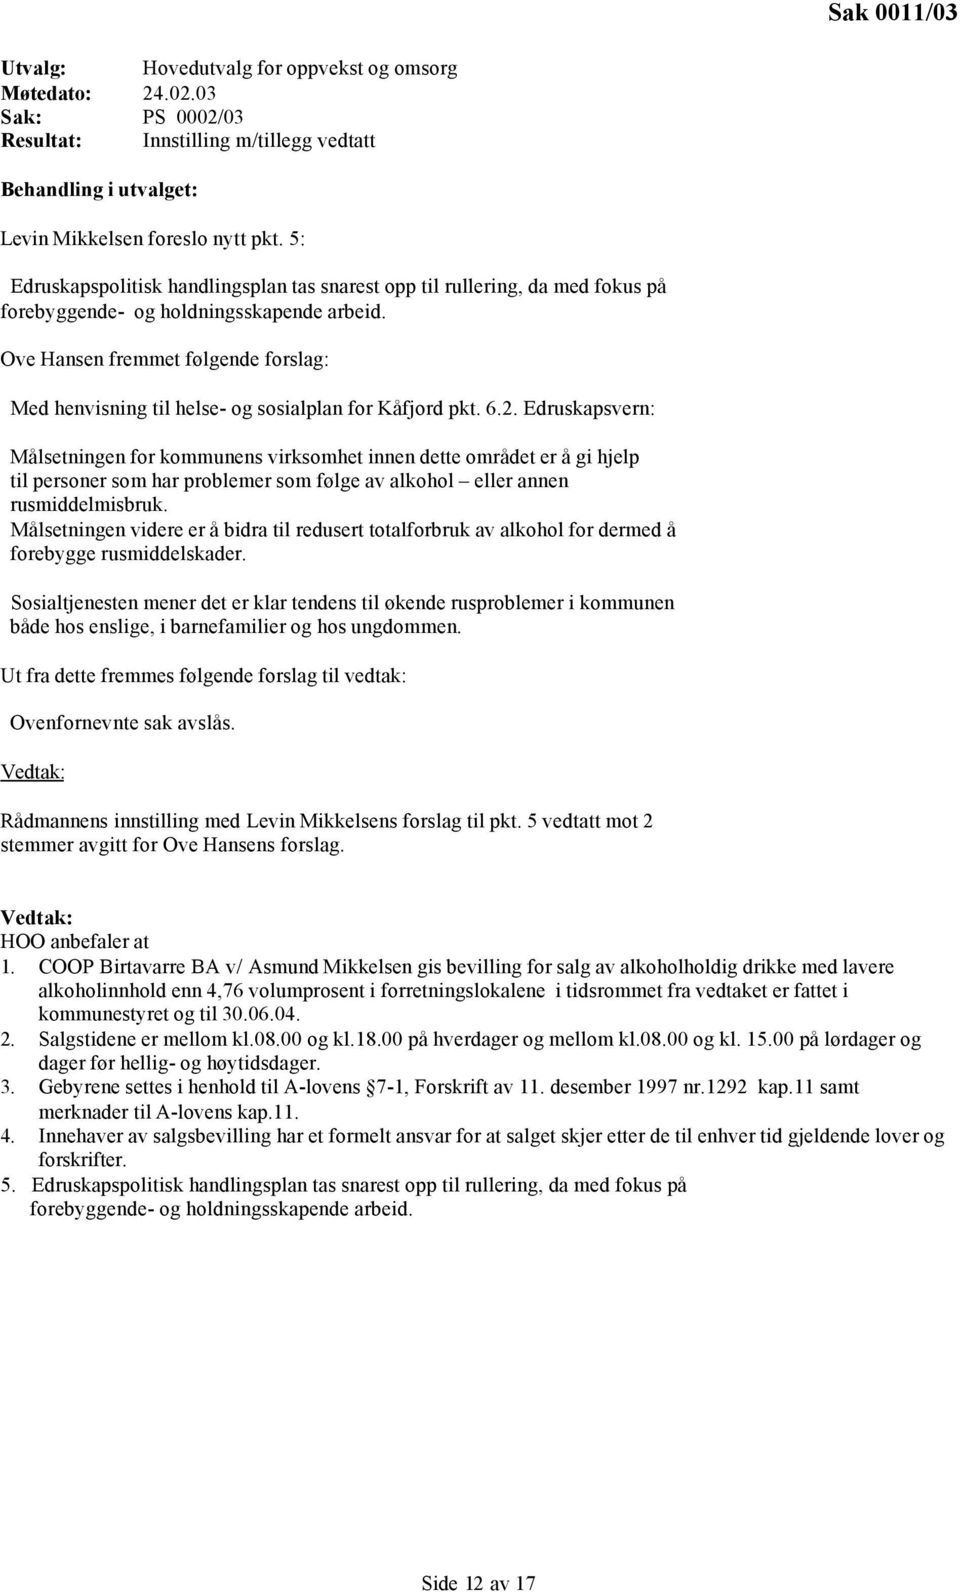 Ove Hansen fremmet følgende forslag: Med henvisning til helse- og sosialplan for Kåfjord pkt. 6.2.